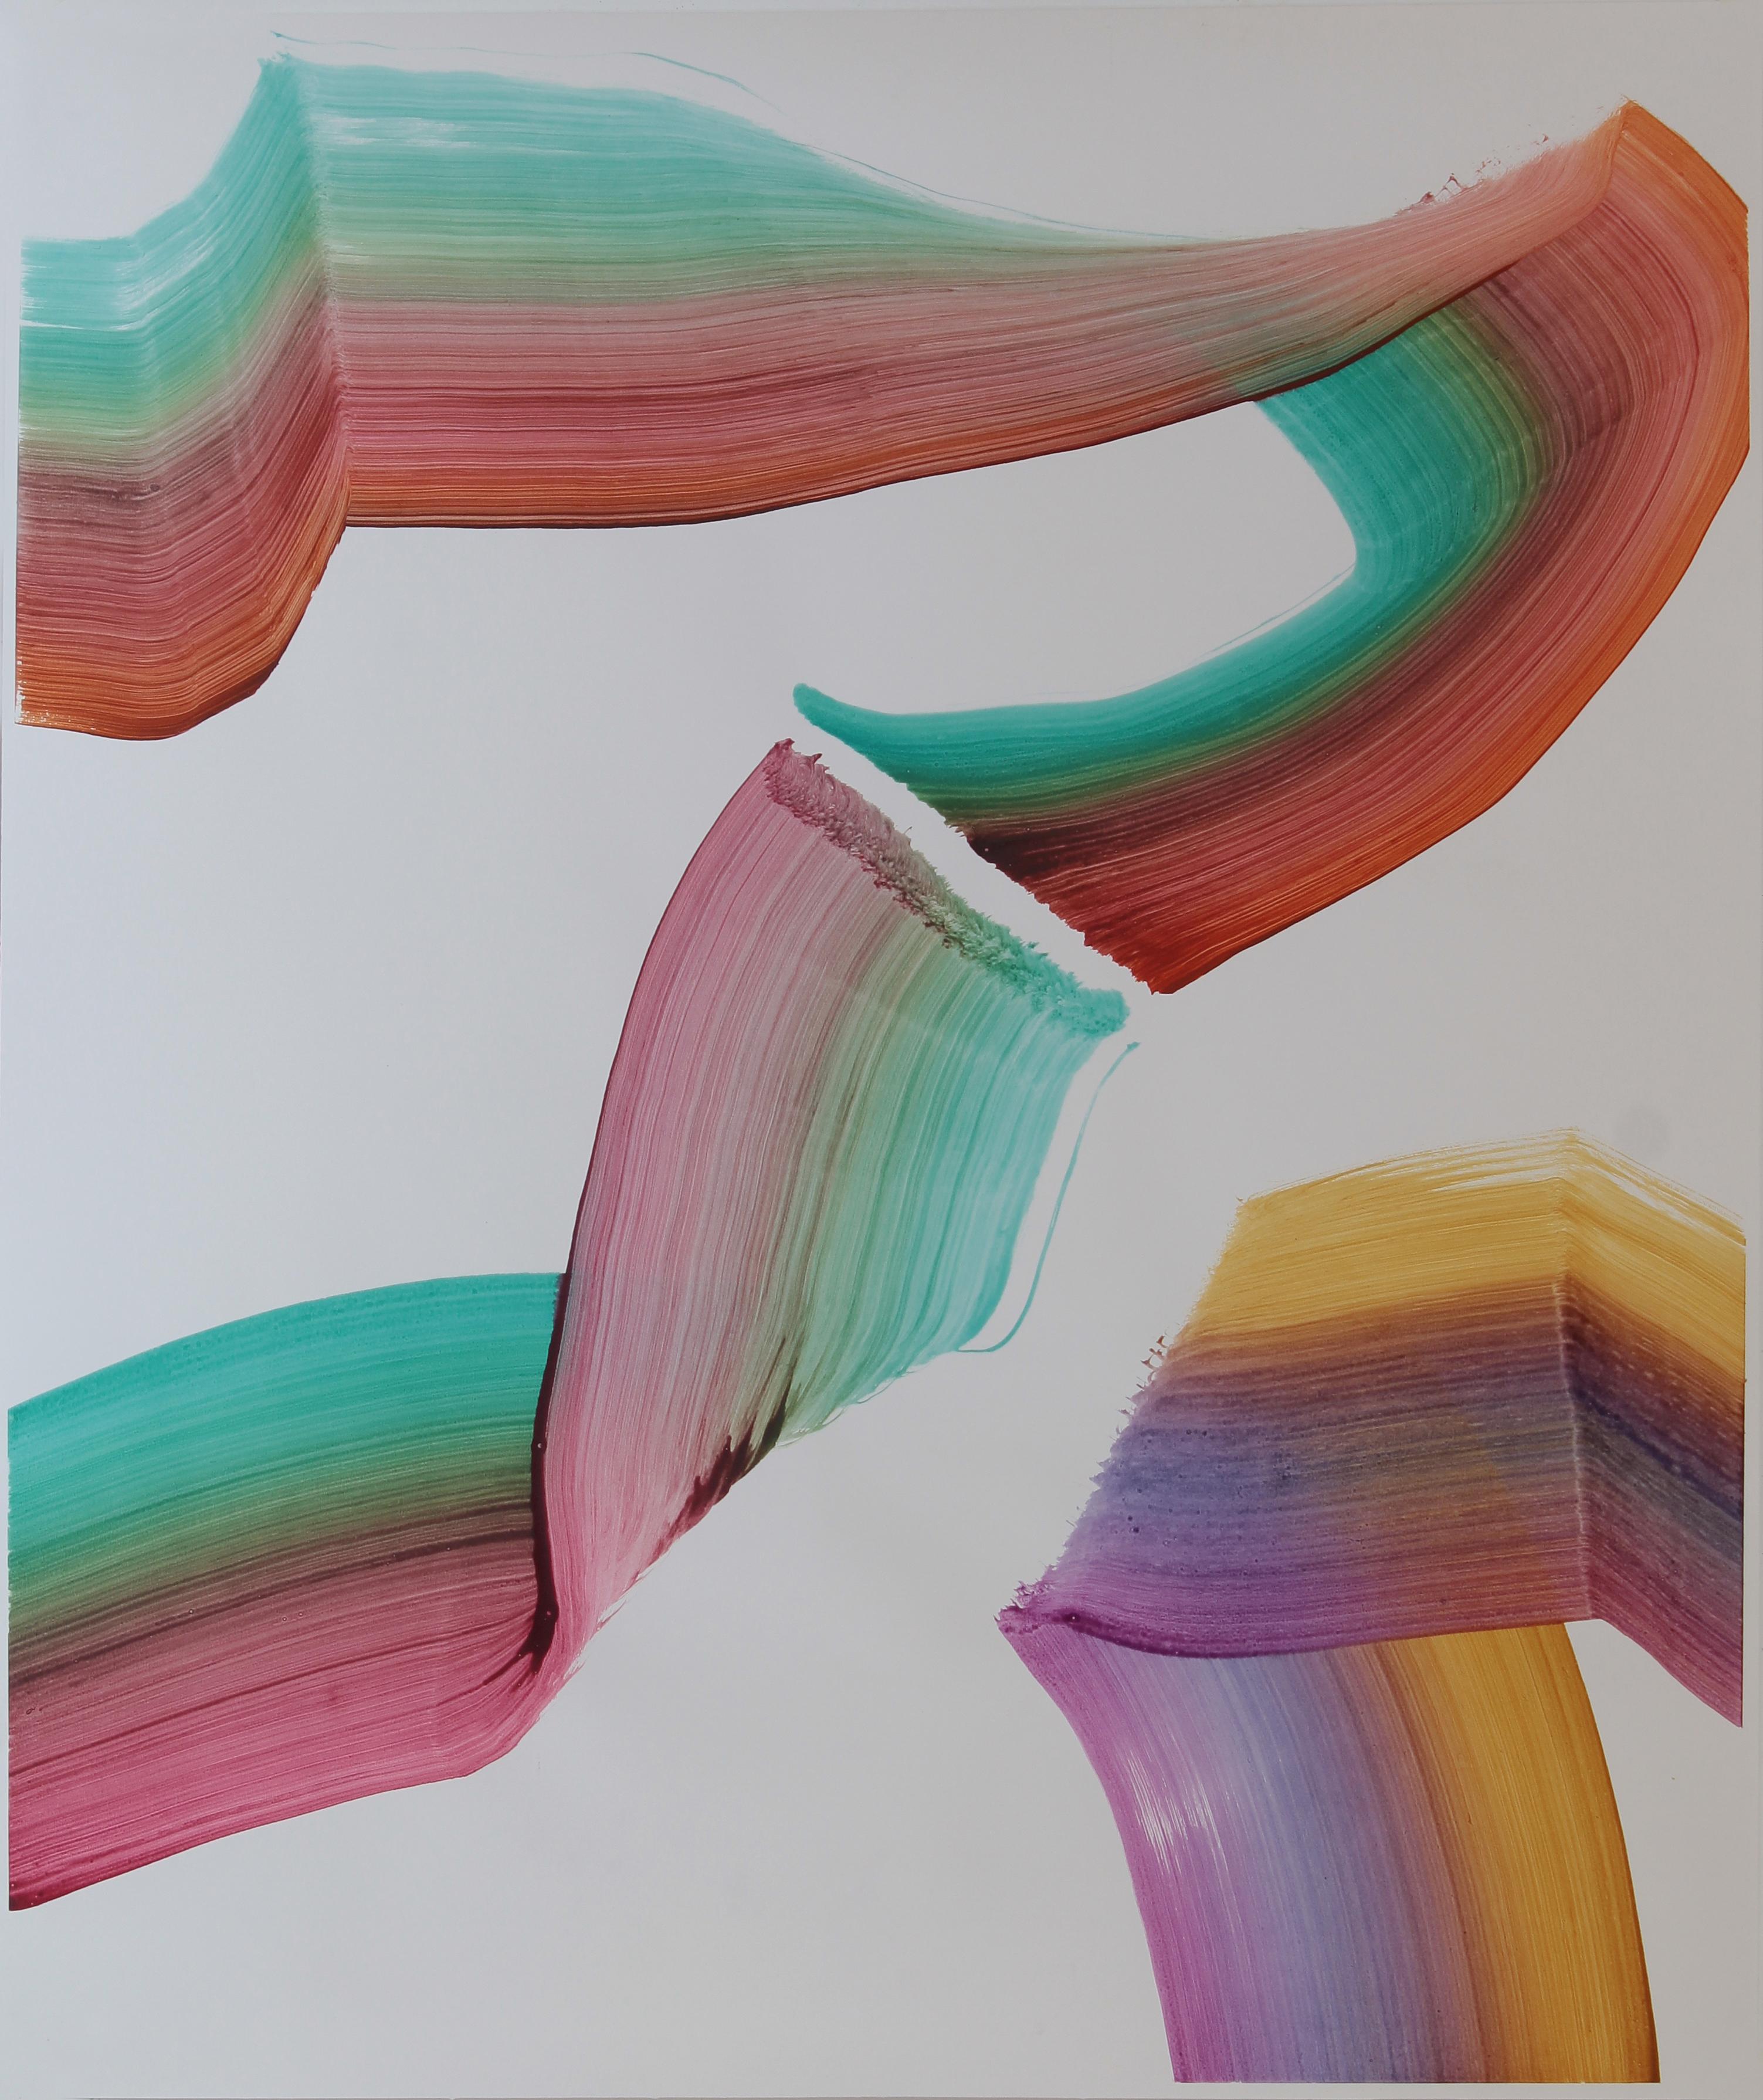 Sans titre 5 - Peinture abstraite contemporaine, légèreté des textiles, couleurs vives - Painting de Tomasz Prymon